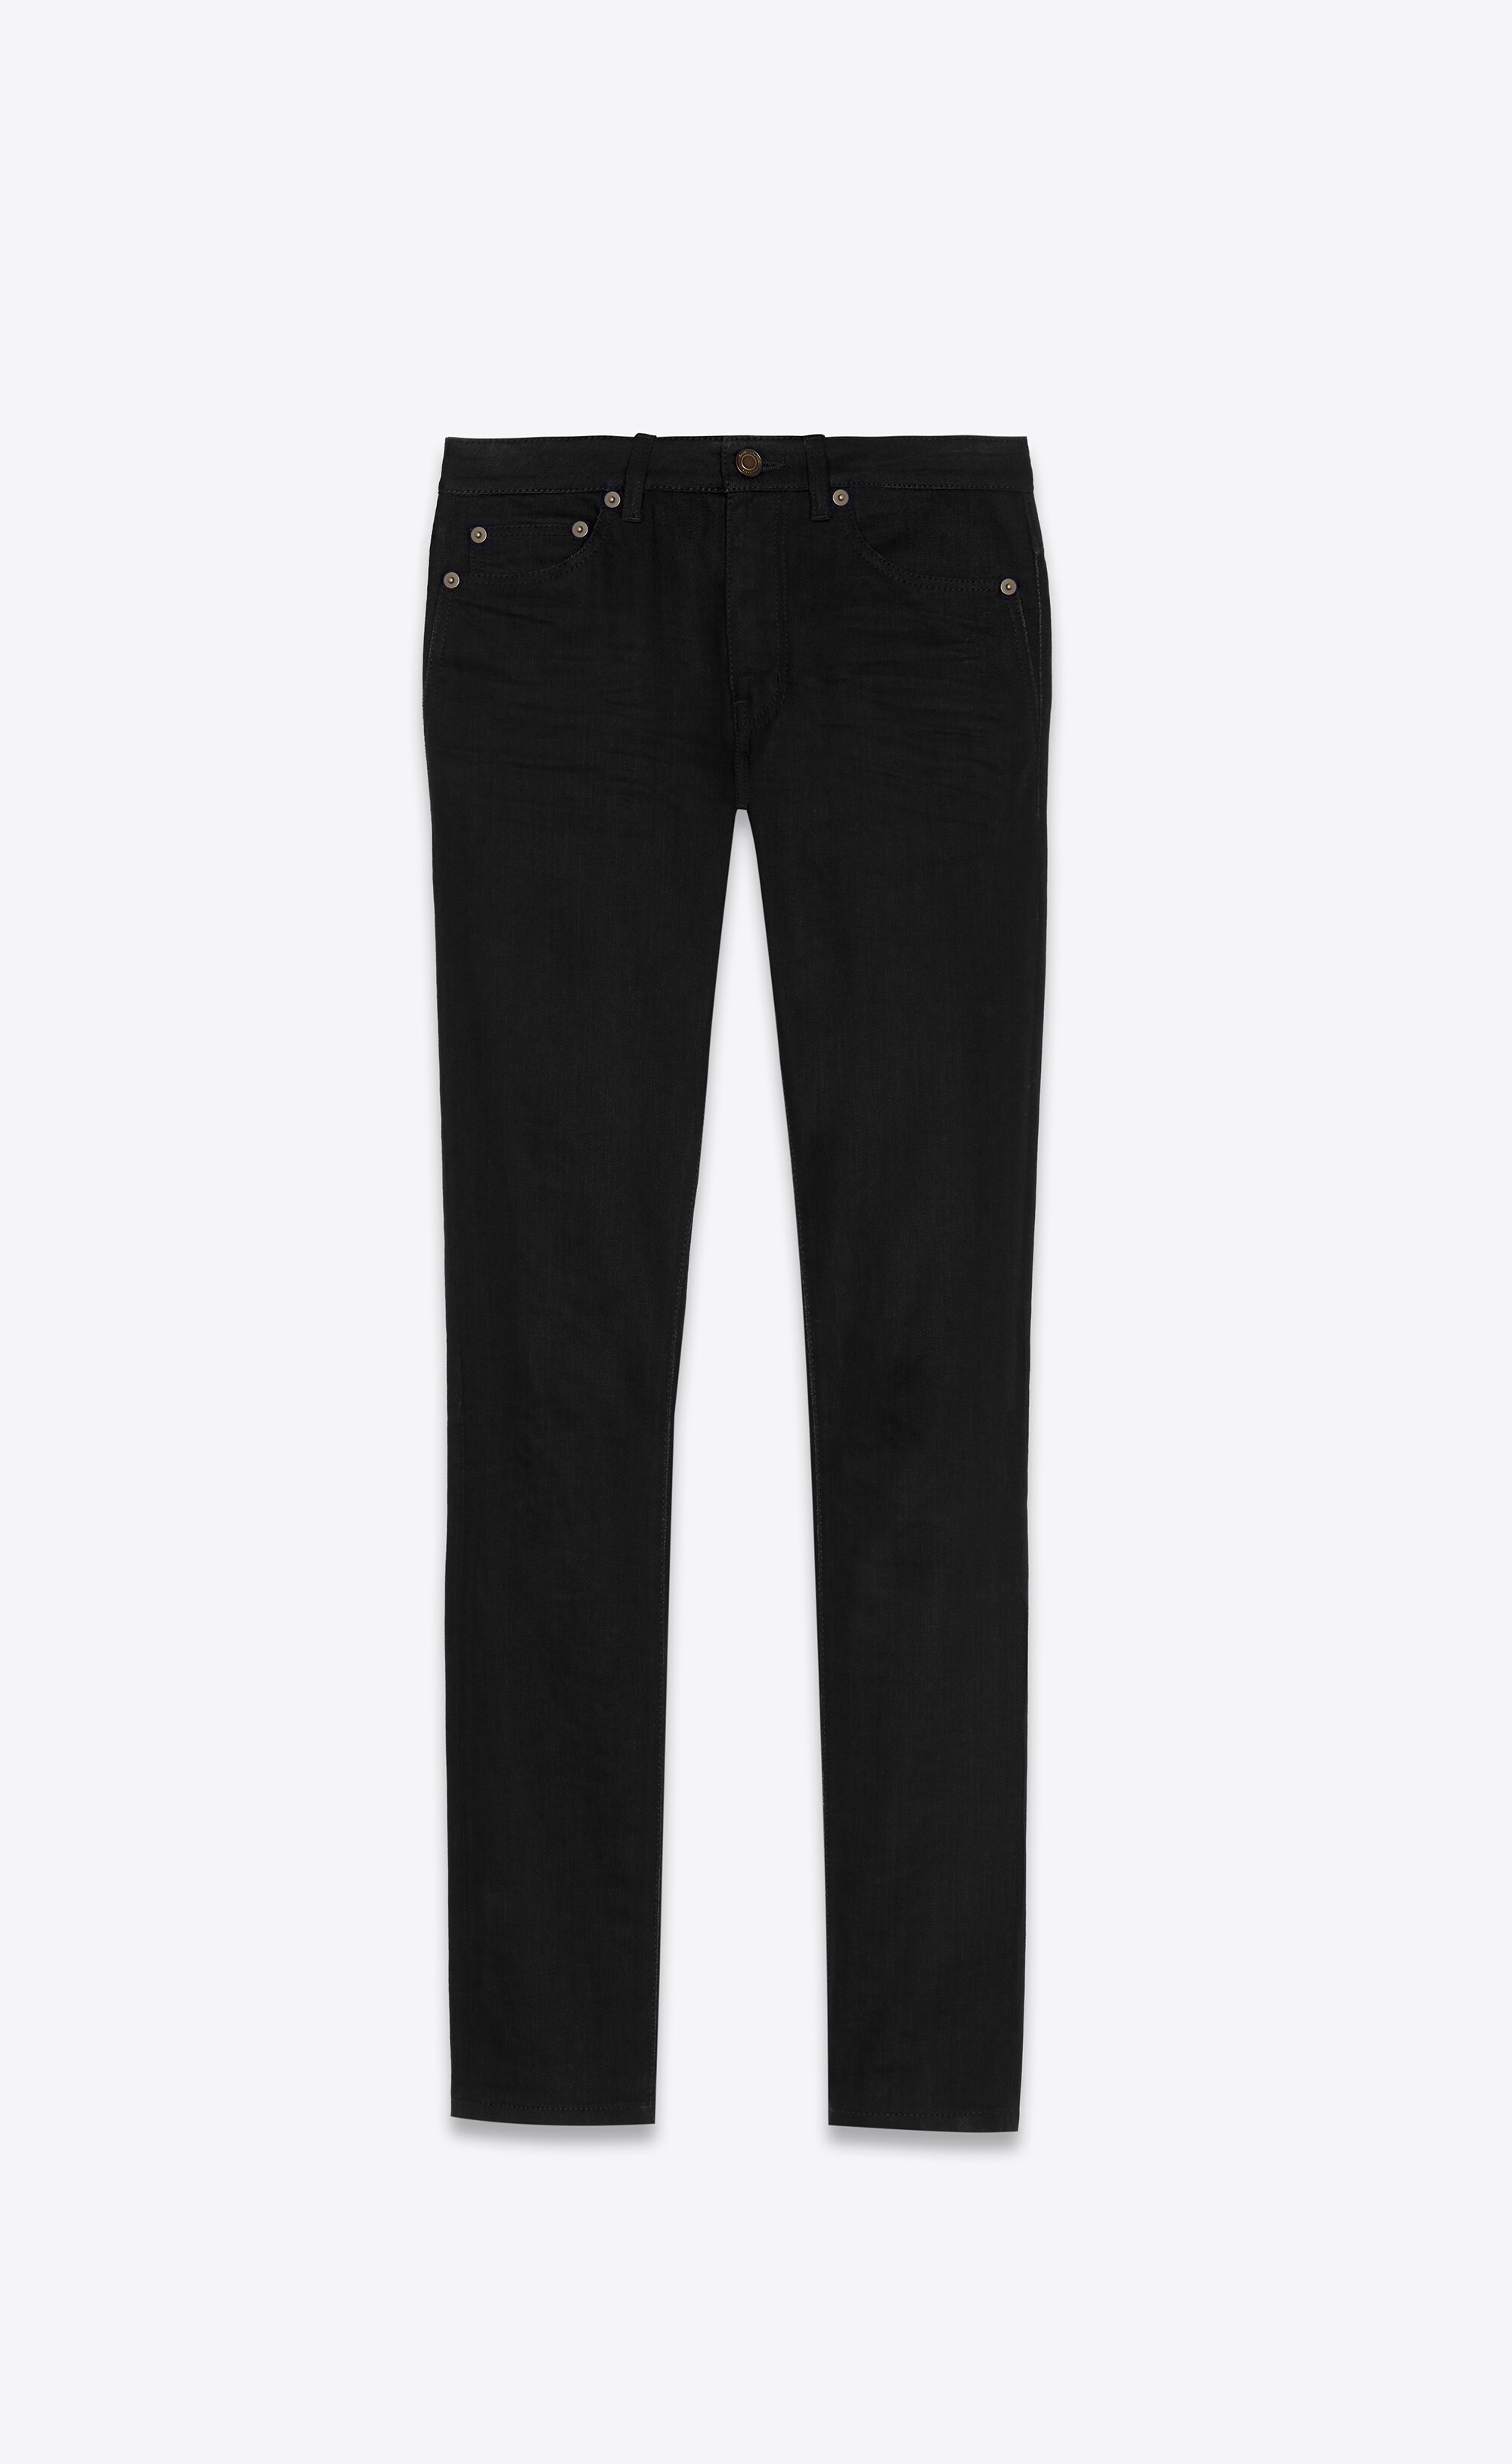 Long Slim-Fit Jeans Black Cotton Denim